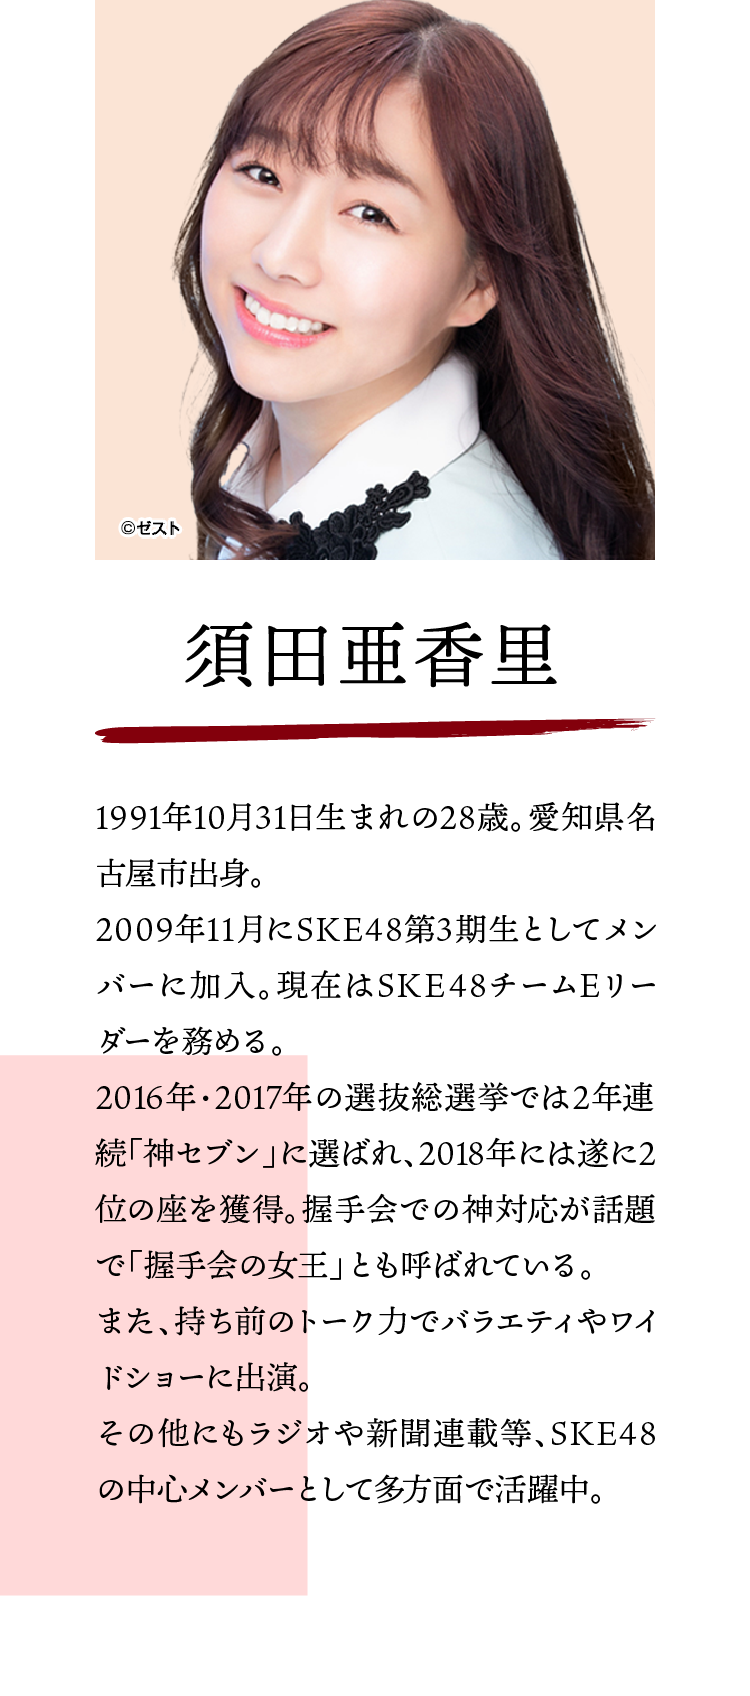 須田亜香里:1991年10月31日生まれの28歳。愛知県名古屋市出身。2009年11月にSKE48第3期生としてメンバーに加入。現在はSKE48チームEリーダーを務める。2016年・2017年の選抜総選挙では2年連続「神セブン」に選ばれ、2018年には遂に2位の座を獲得。握手会での神対応が話題で「握手会の女王」とも呼ばれている。また、持ち前のトーク力でバラエティやワイドショーに出演。その他にもラジオや新聞連載等、SKE48の中心メンバーとして多方面で活躍中。